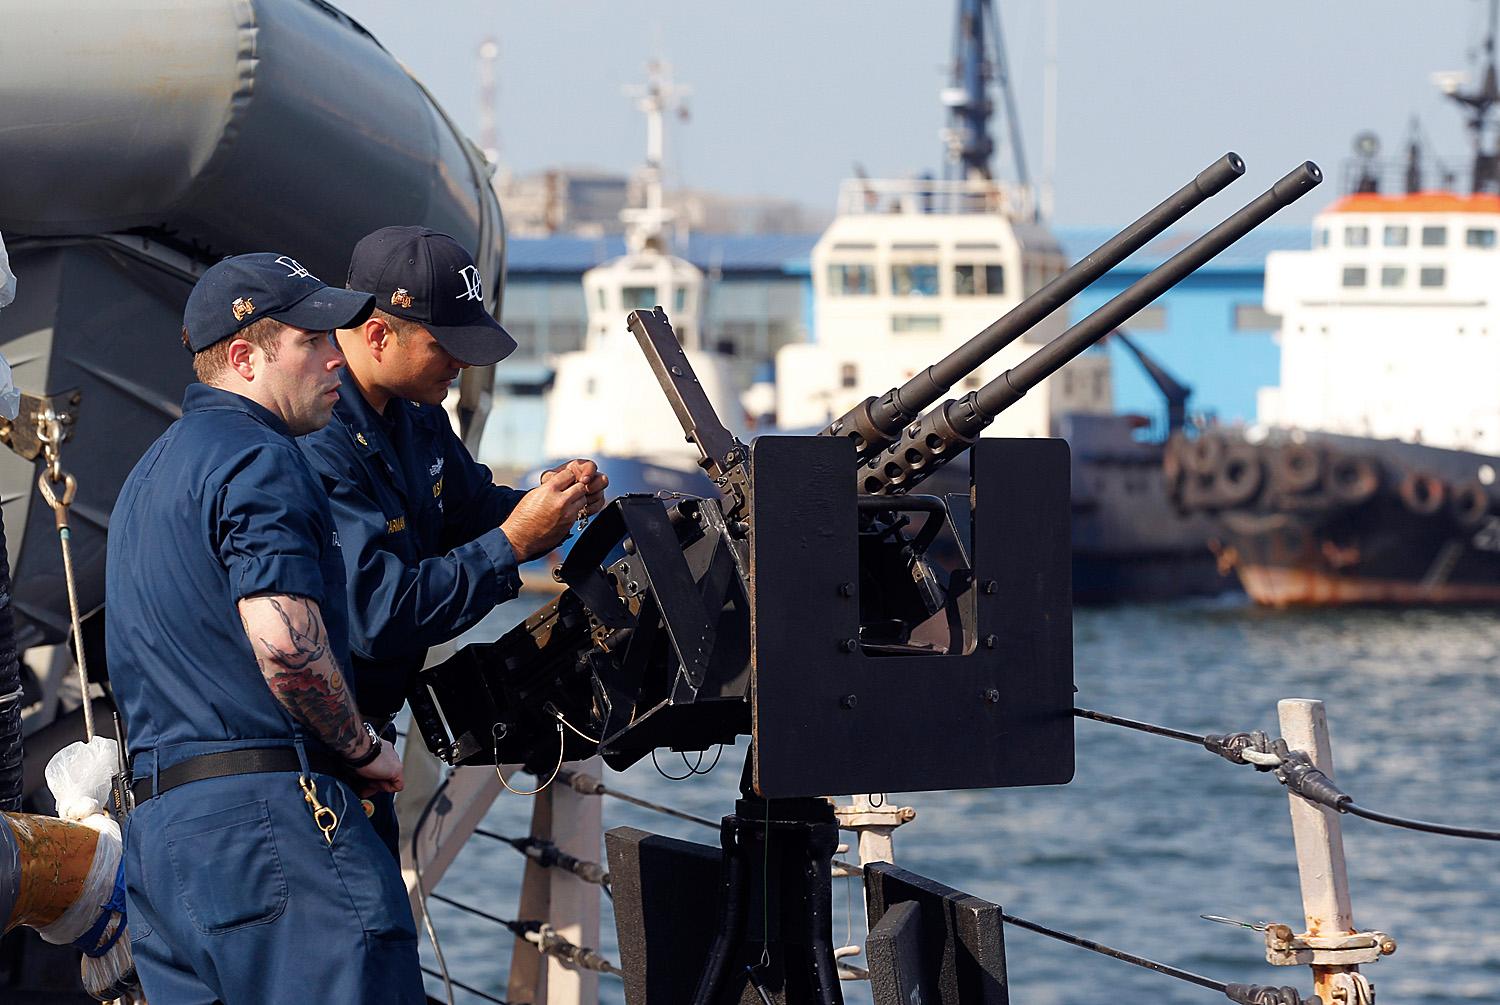 Fegyvert emelnek egy hadihajó, az USS Donald Cook fedélzetére Romániában, Constanta kikötőjében. Traian Basescu román elnök fokozott amerikai jelenlétre számít a régióban az ukrán válság miatt